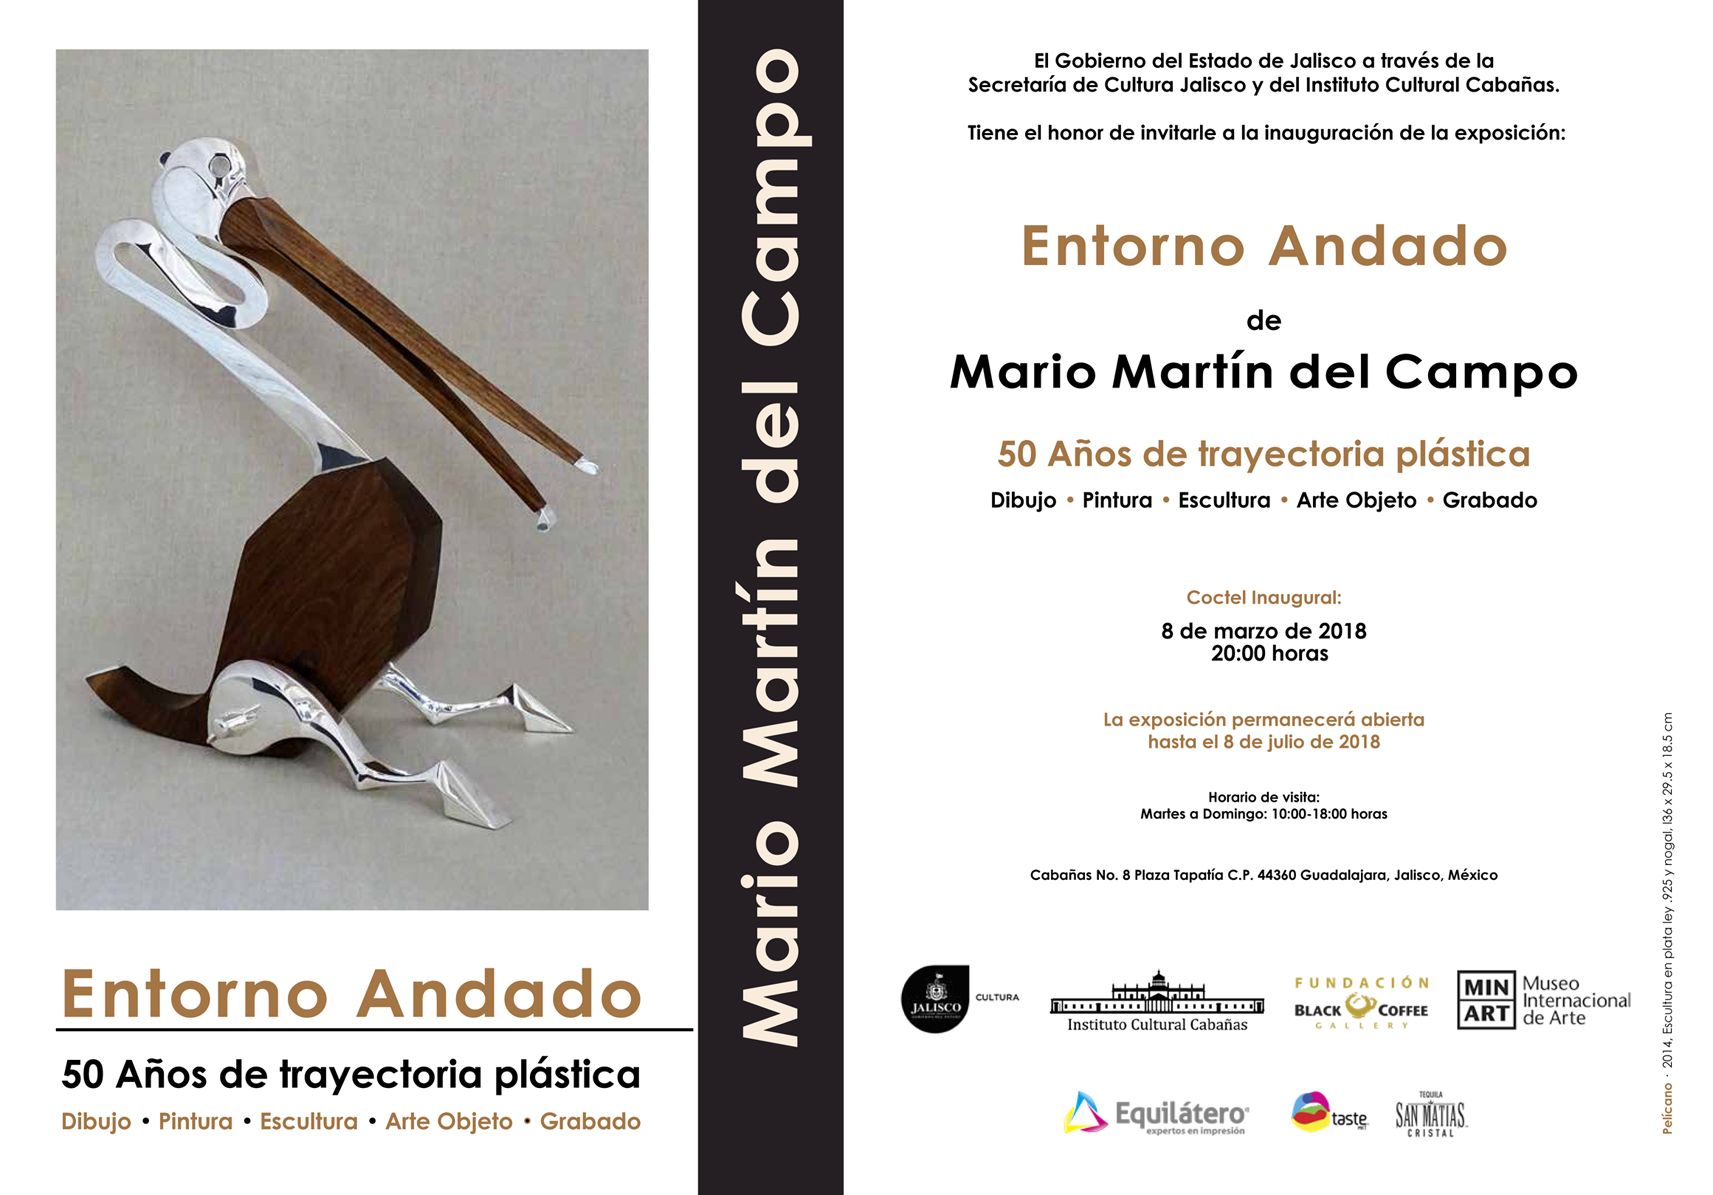 Invitacion-exposicion-Entorno-Andado-de-Mario-Martin-del-Campo- Instituto Cultural Cabañas